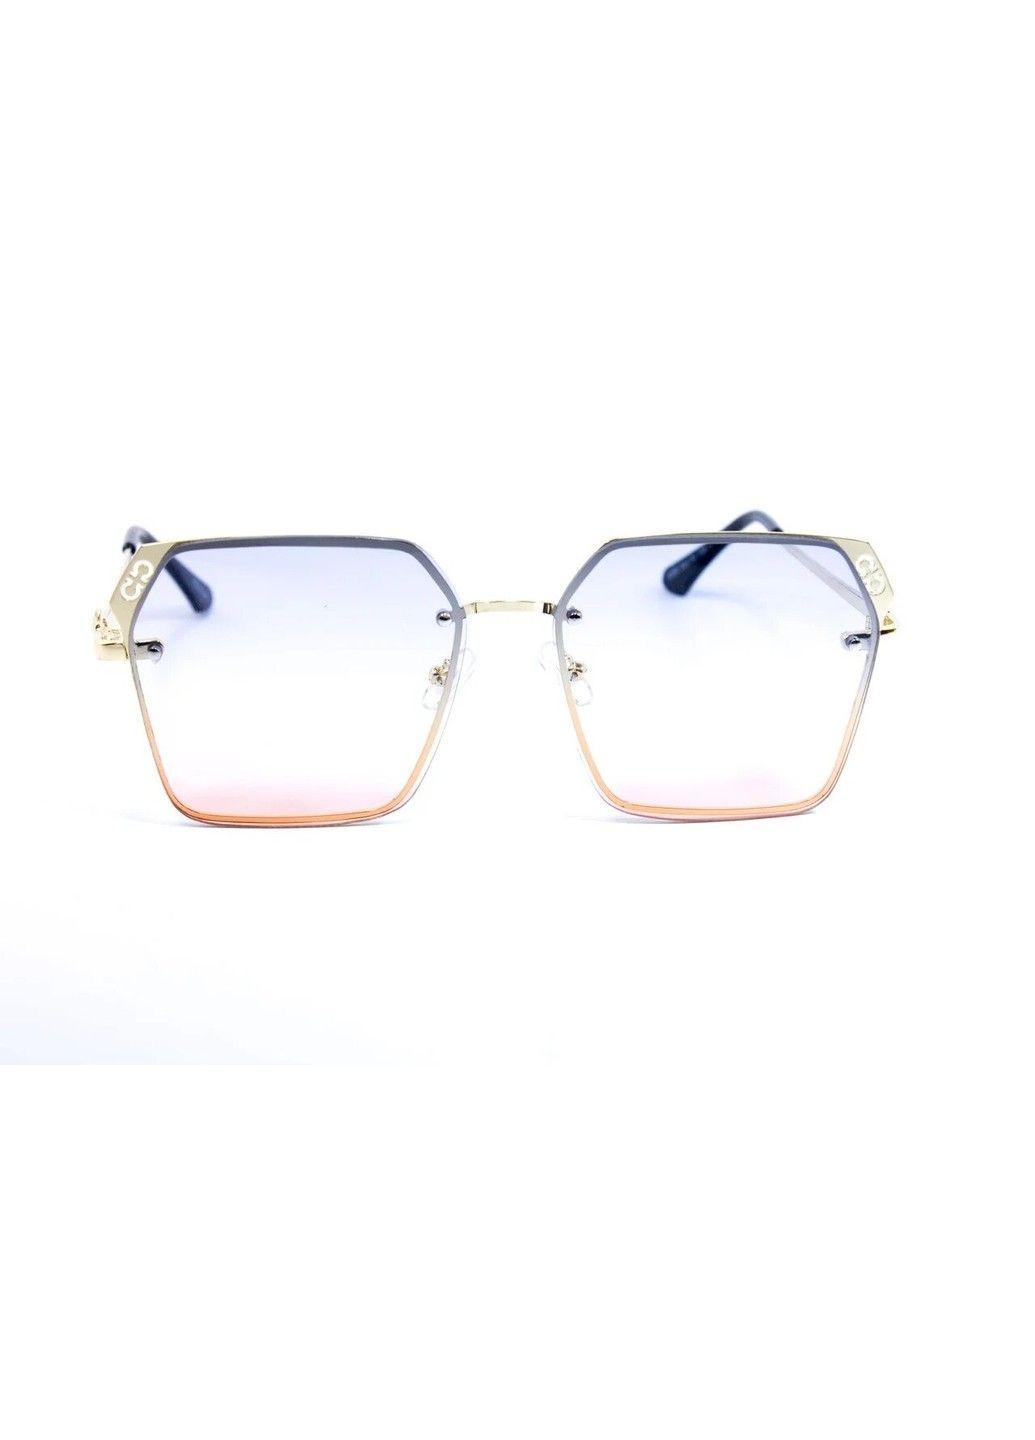 Cолнцезащитные женские очки 0369-3 BR-S (292755522)